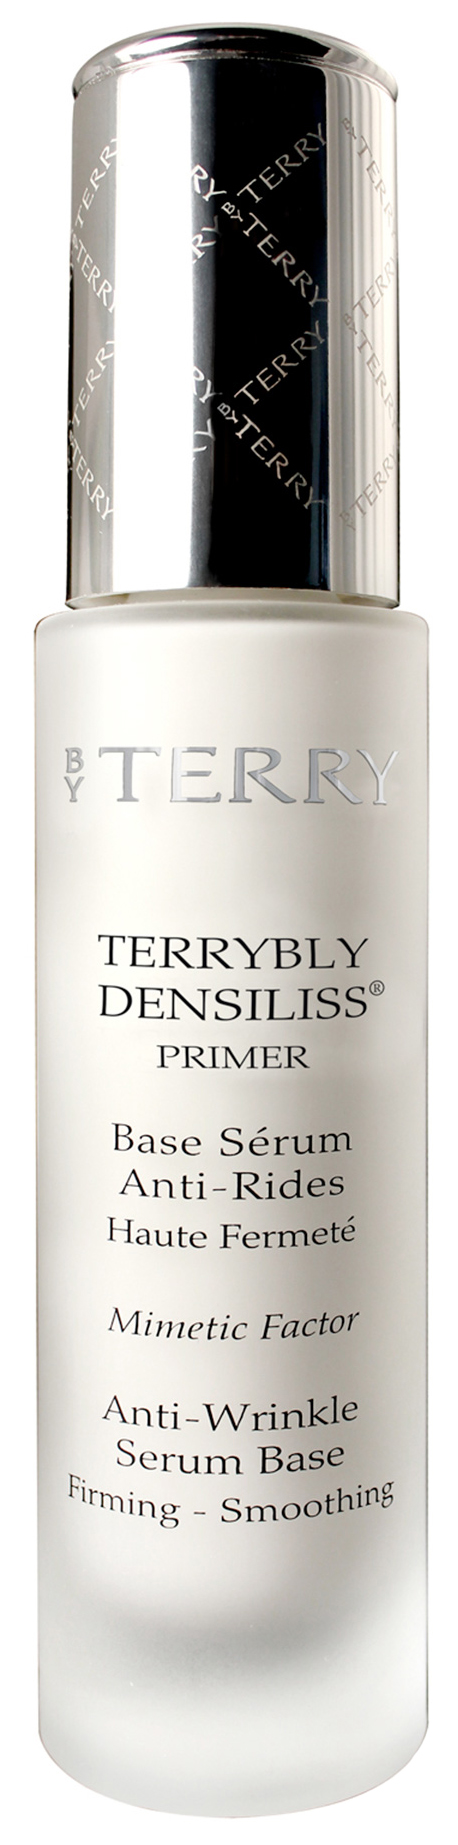 Купить Основа для макияжа By Terry Terrybly Densiliss Primer 30 мл